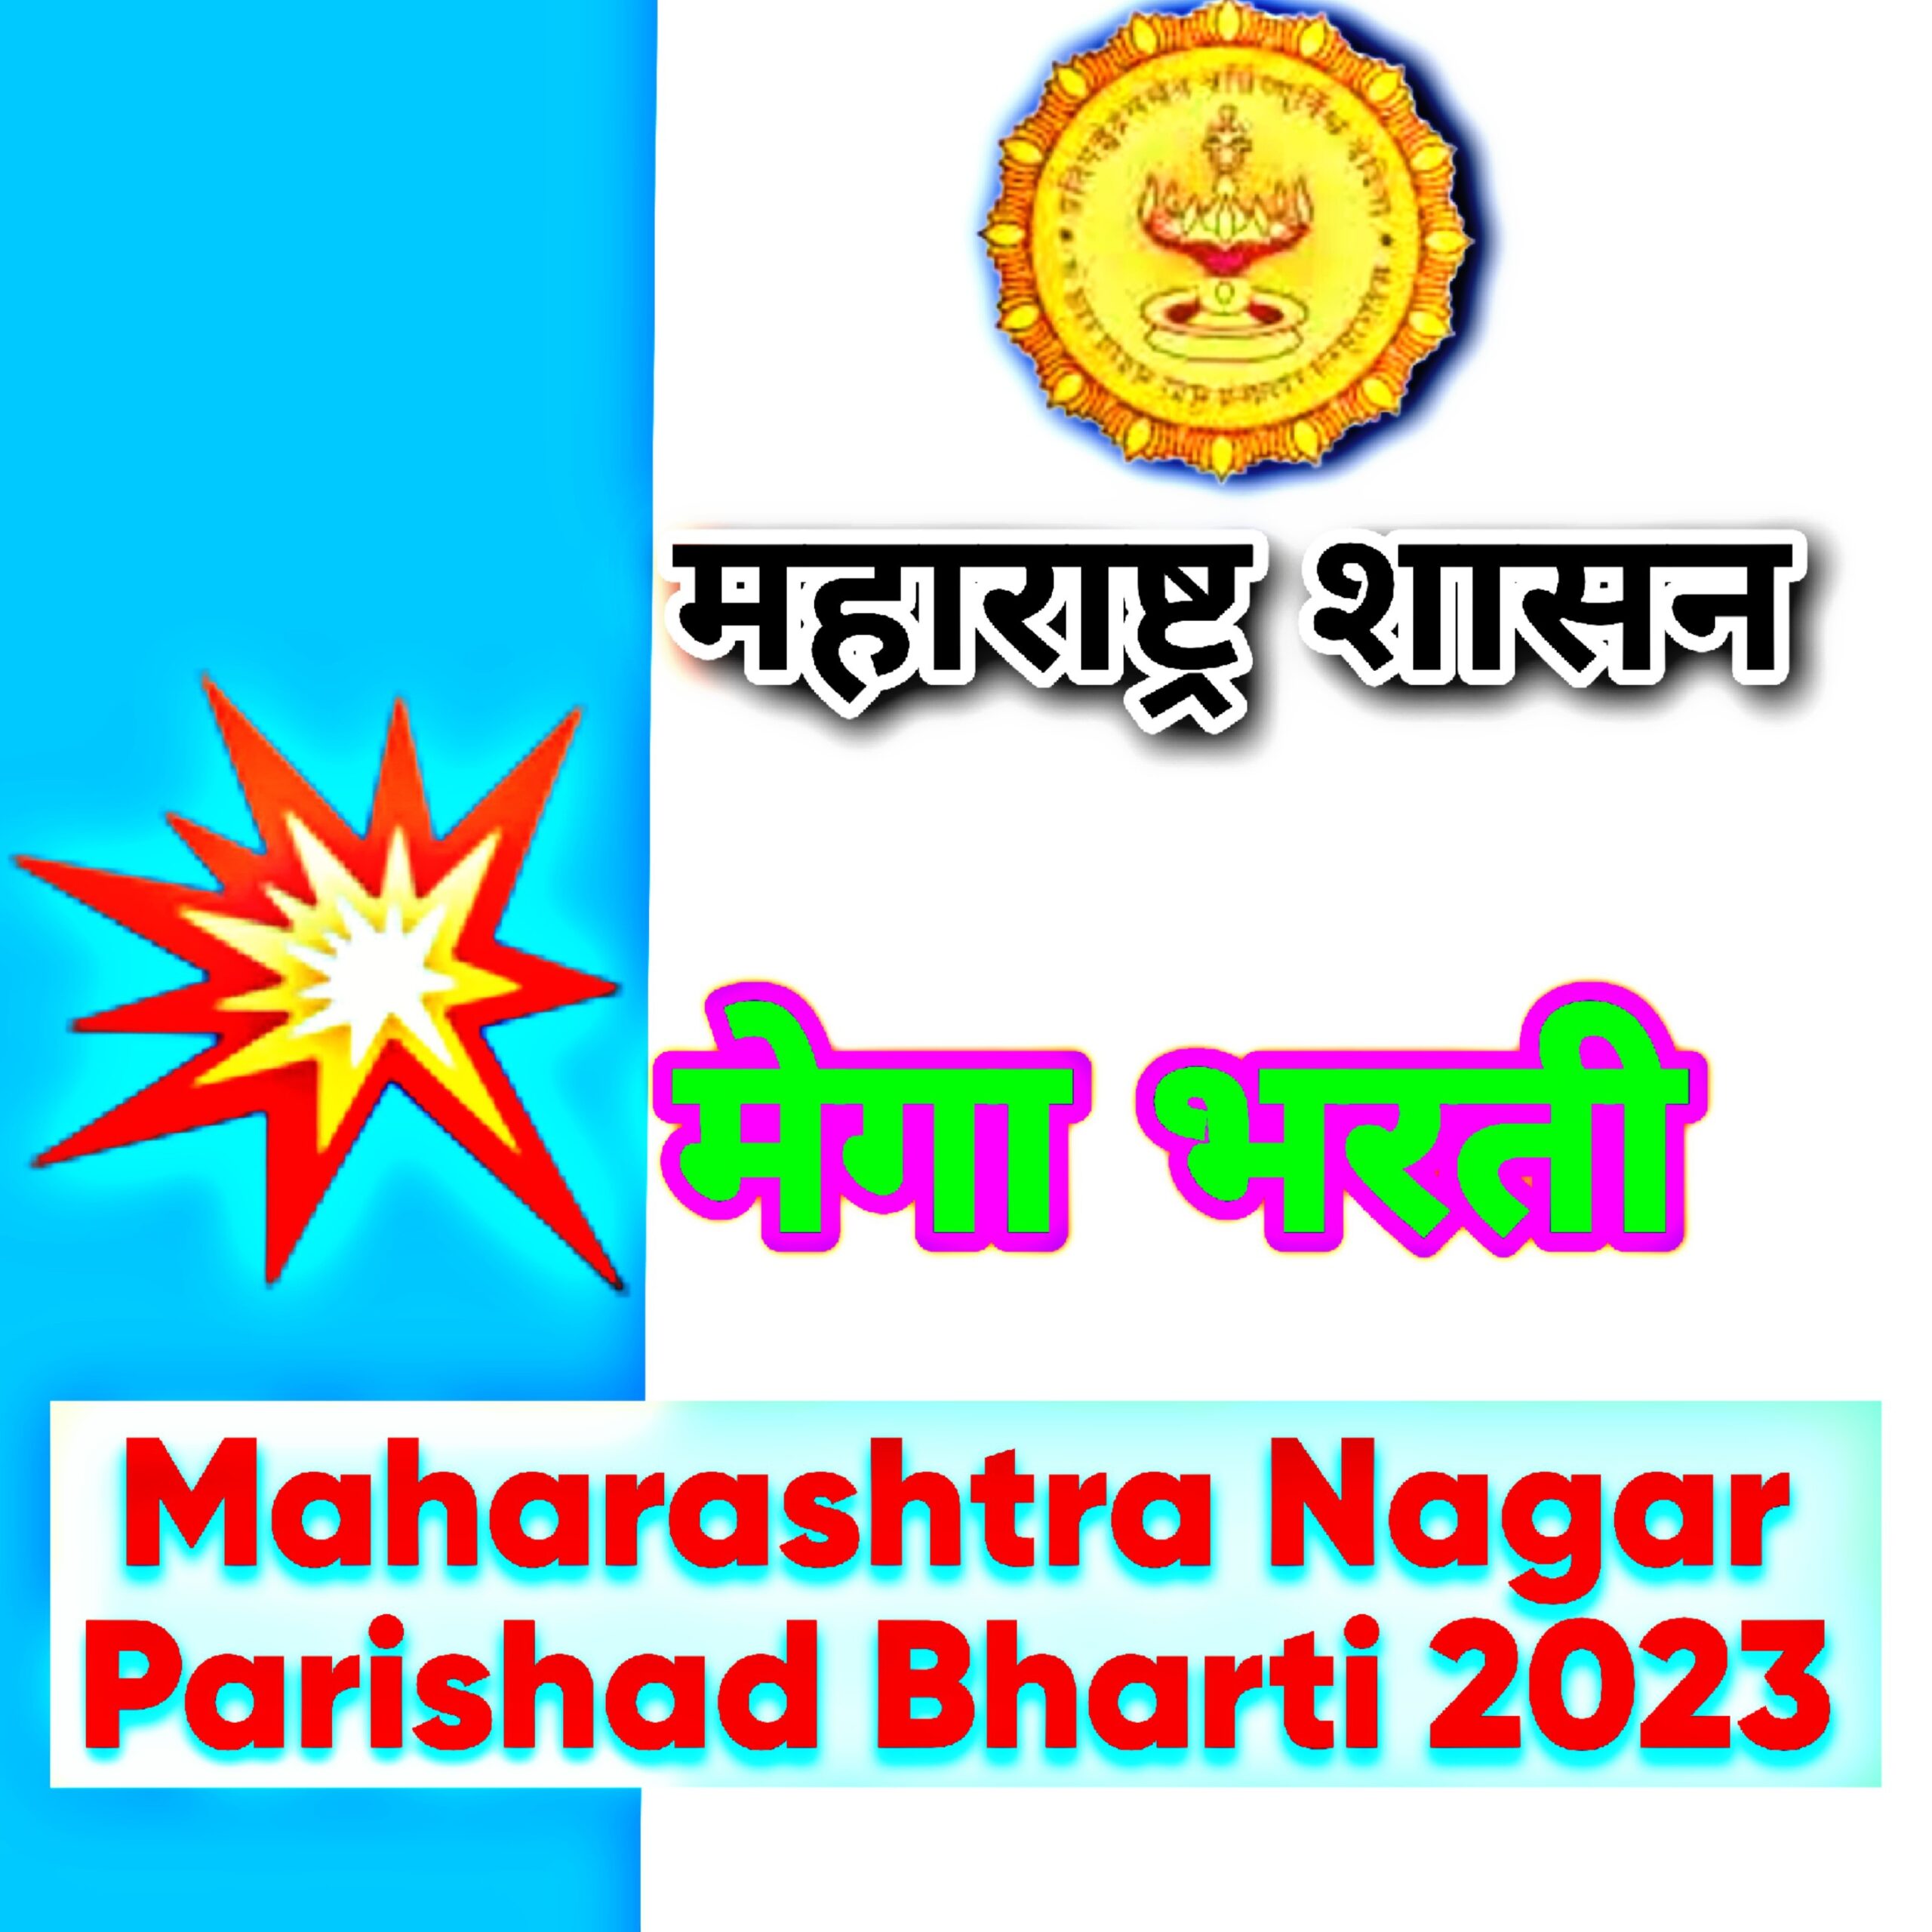 maharashtra-nagar-parishad-bharti-2023: